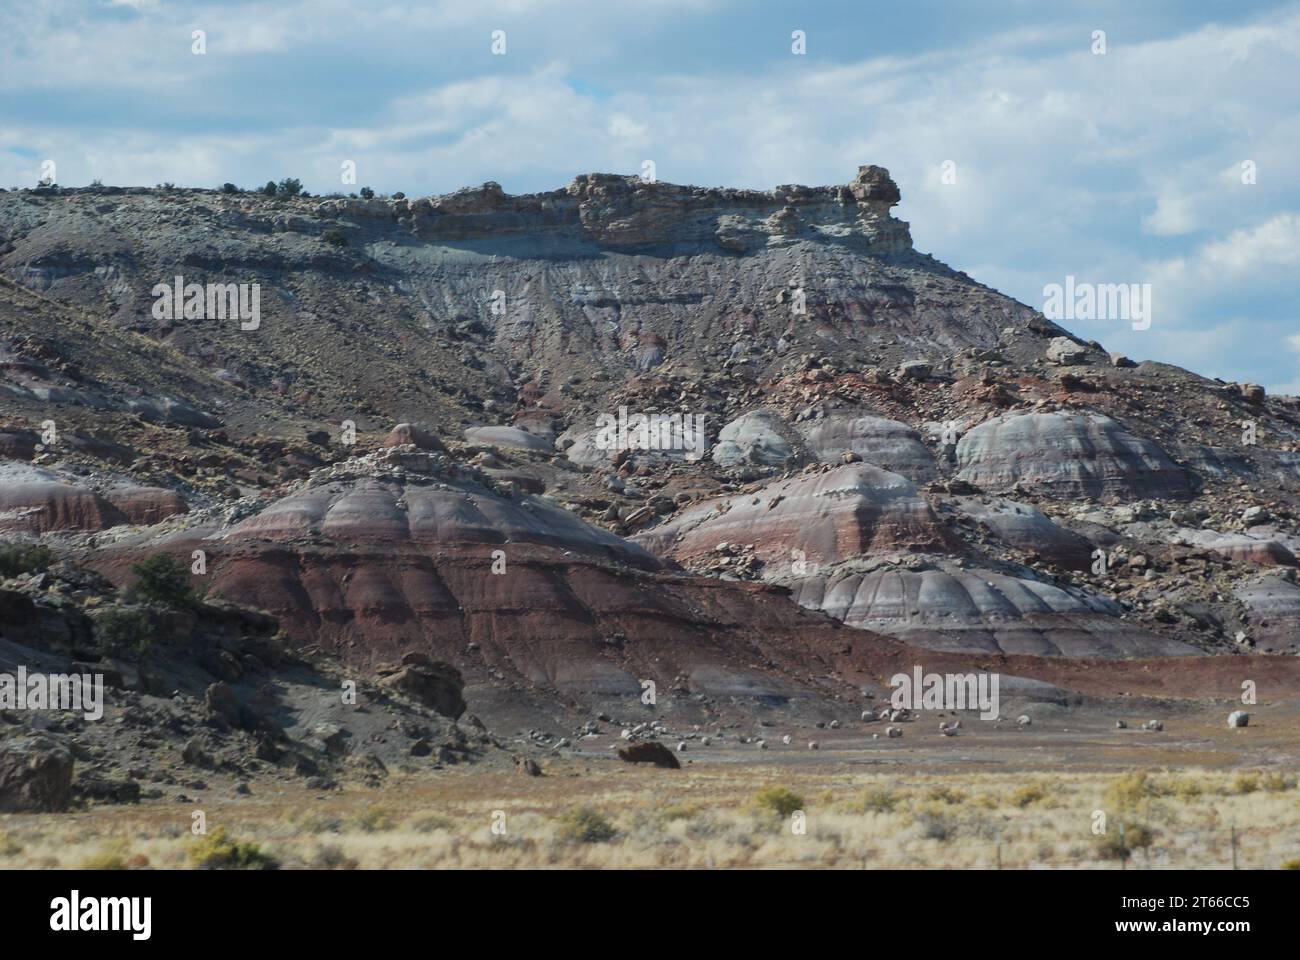 Die Seiten der antiken Geschichte sind in den Klippen und Canyons von South Central Utah geschrieben, wo die freigelegte Geologie bis in die Zeit der Dinosaurier zurückreicht. Stockfoto